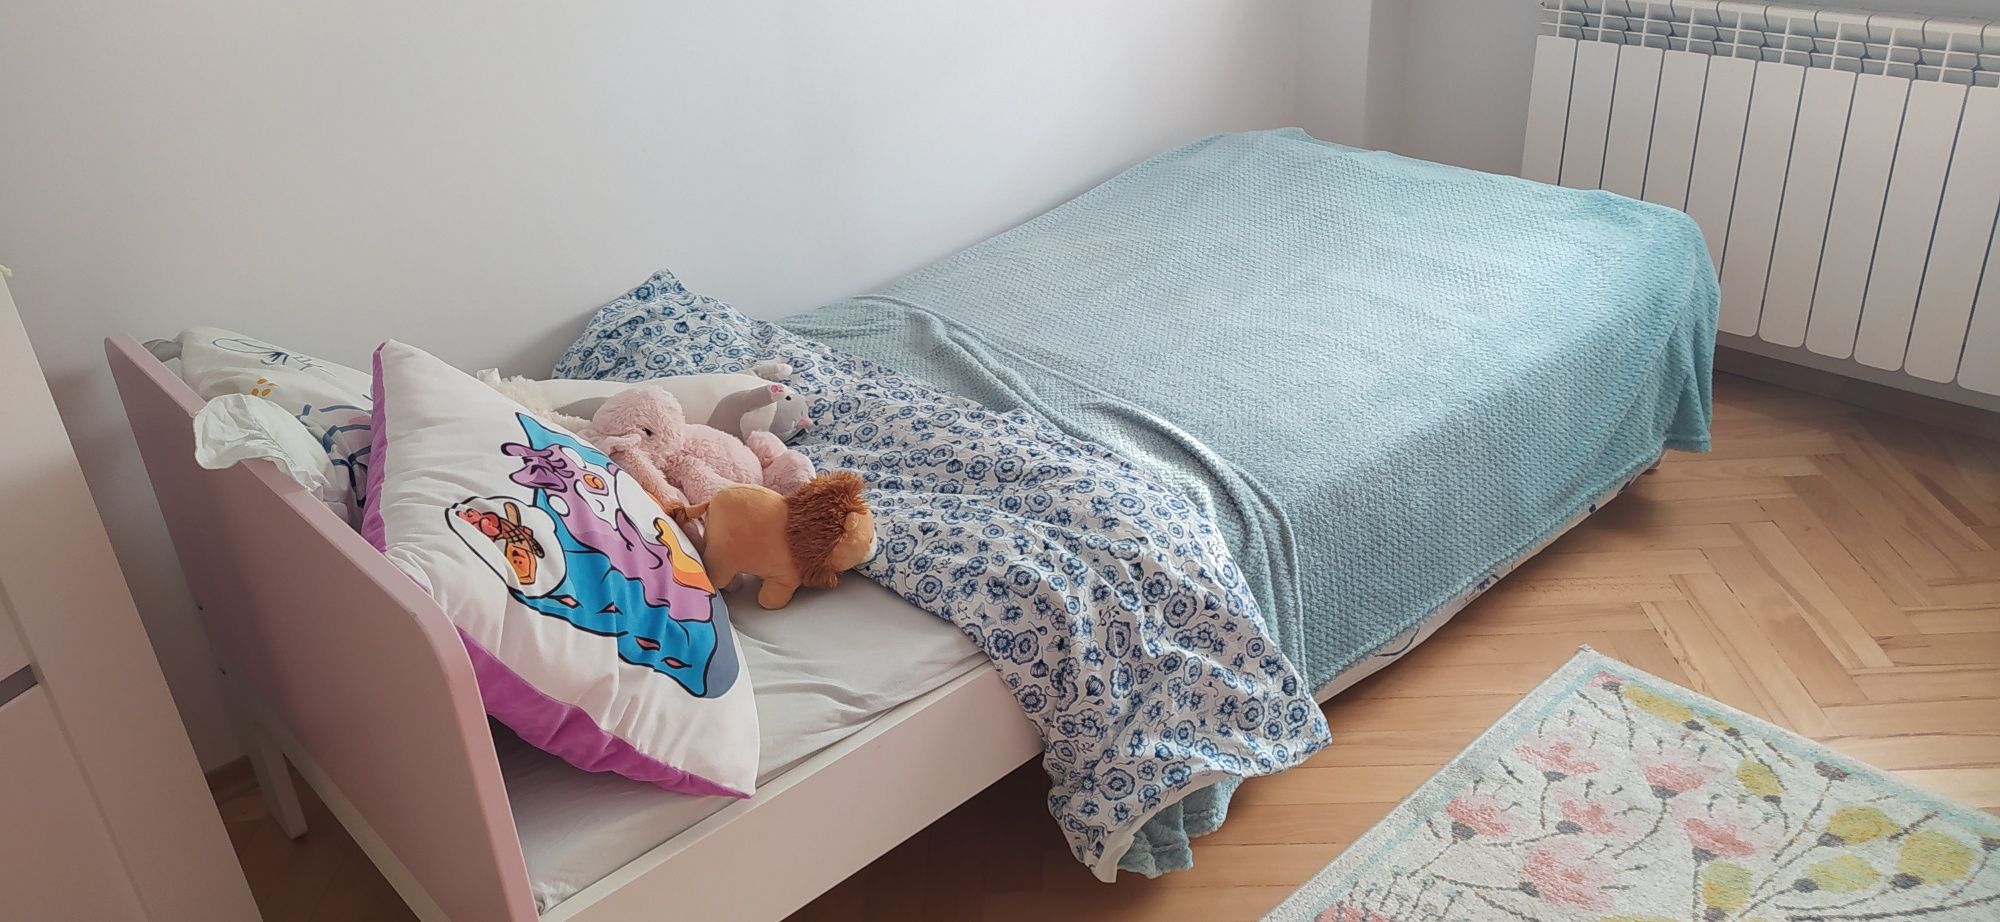 Łóżko i materac Ikea rozsuwane rośnie razem z dzieckiem